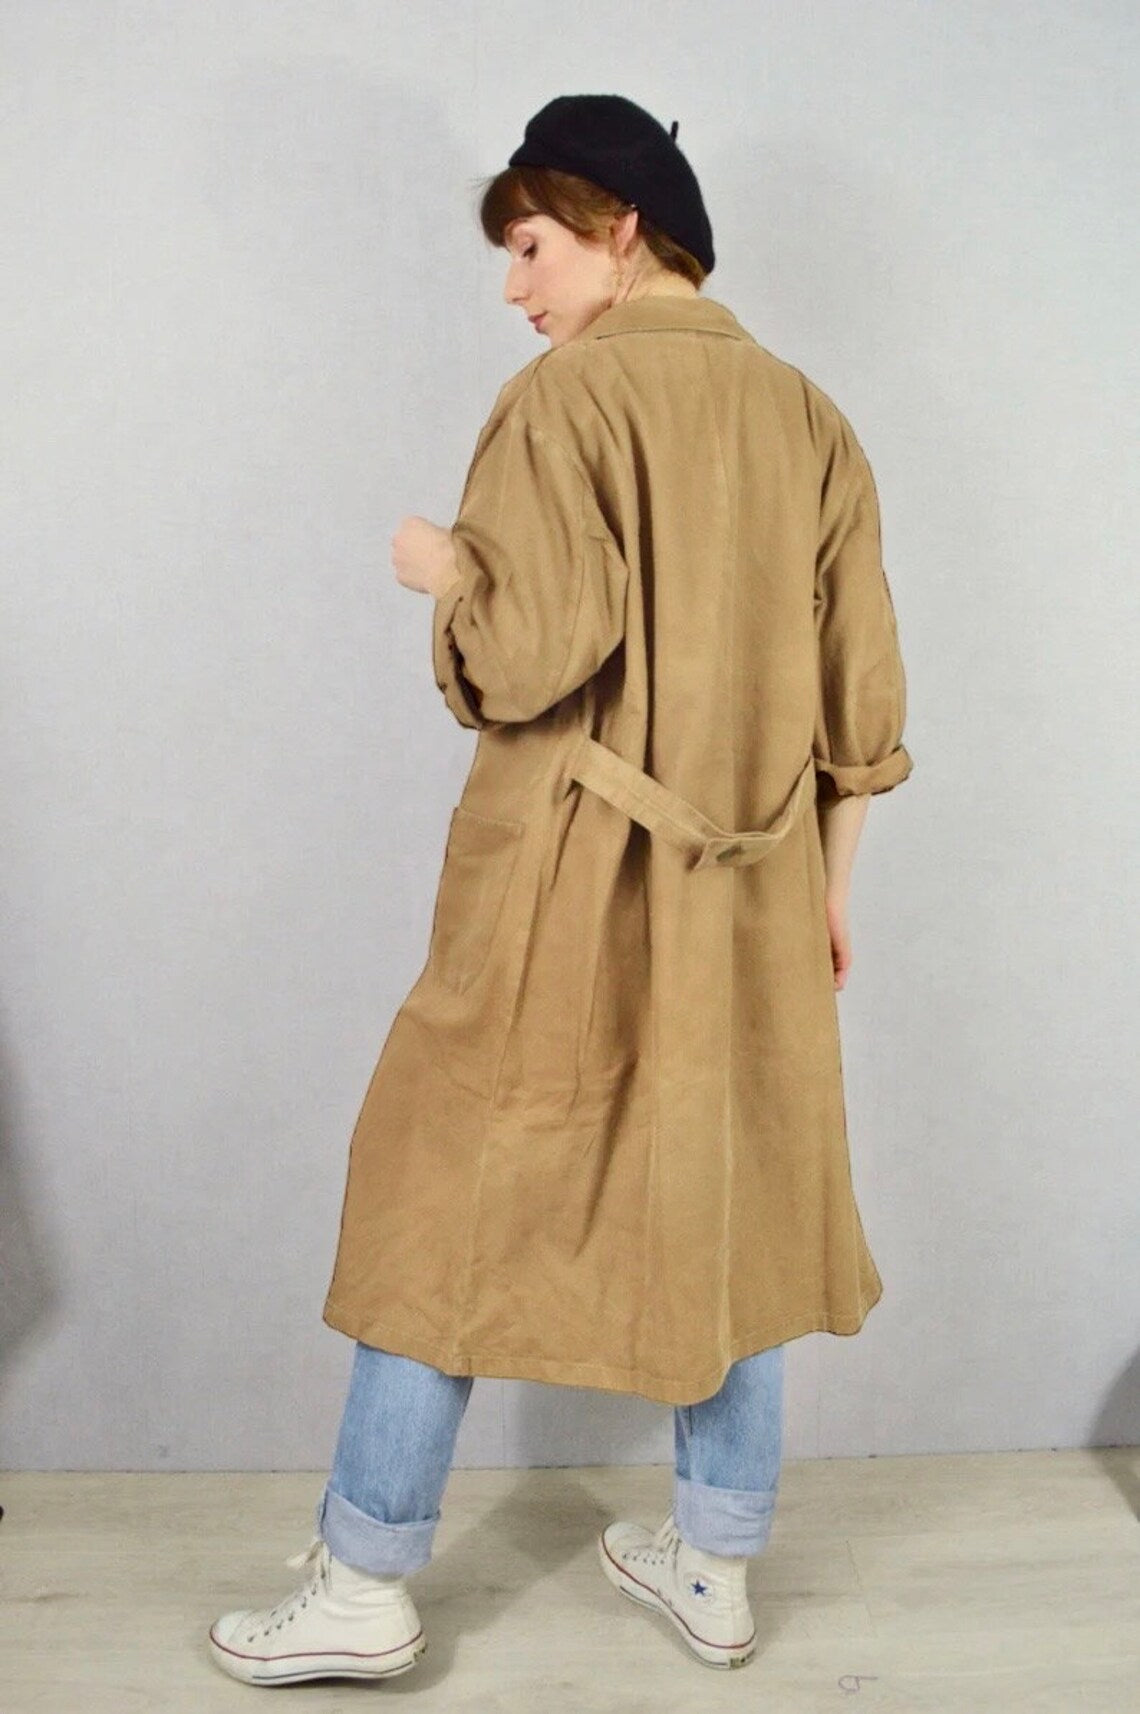 Vintage Duster Work Jacket Faded Camel